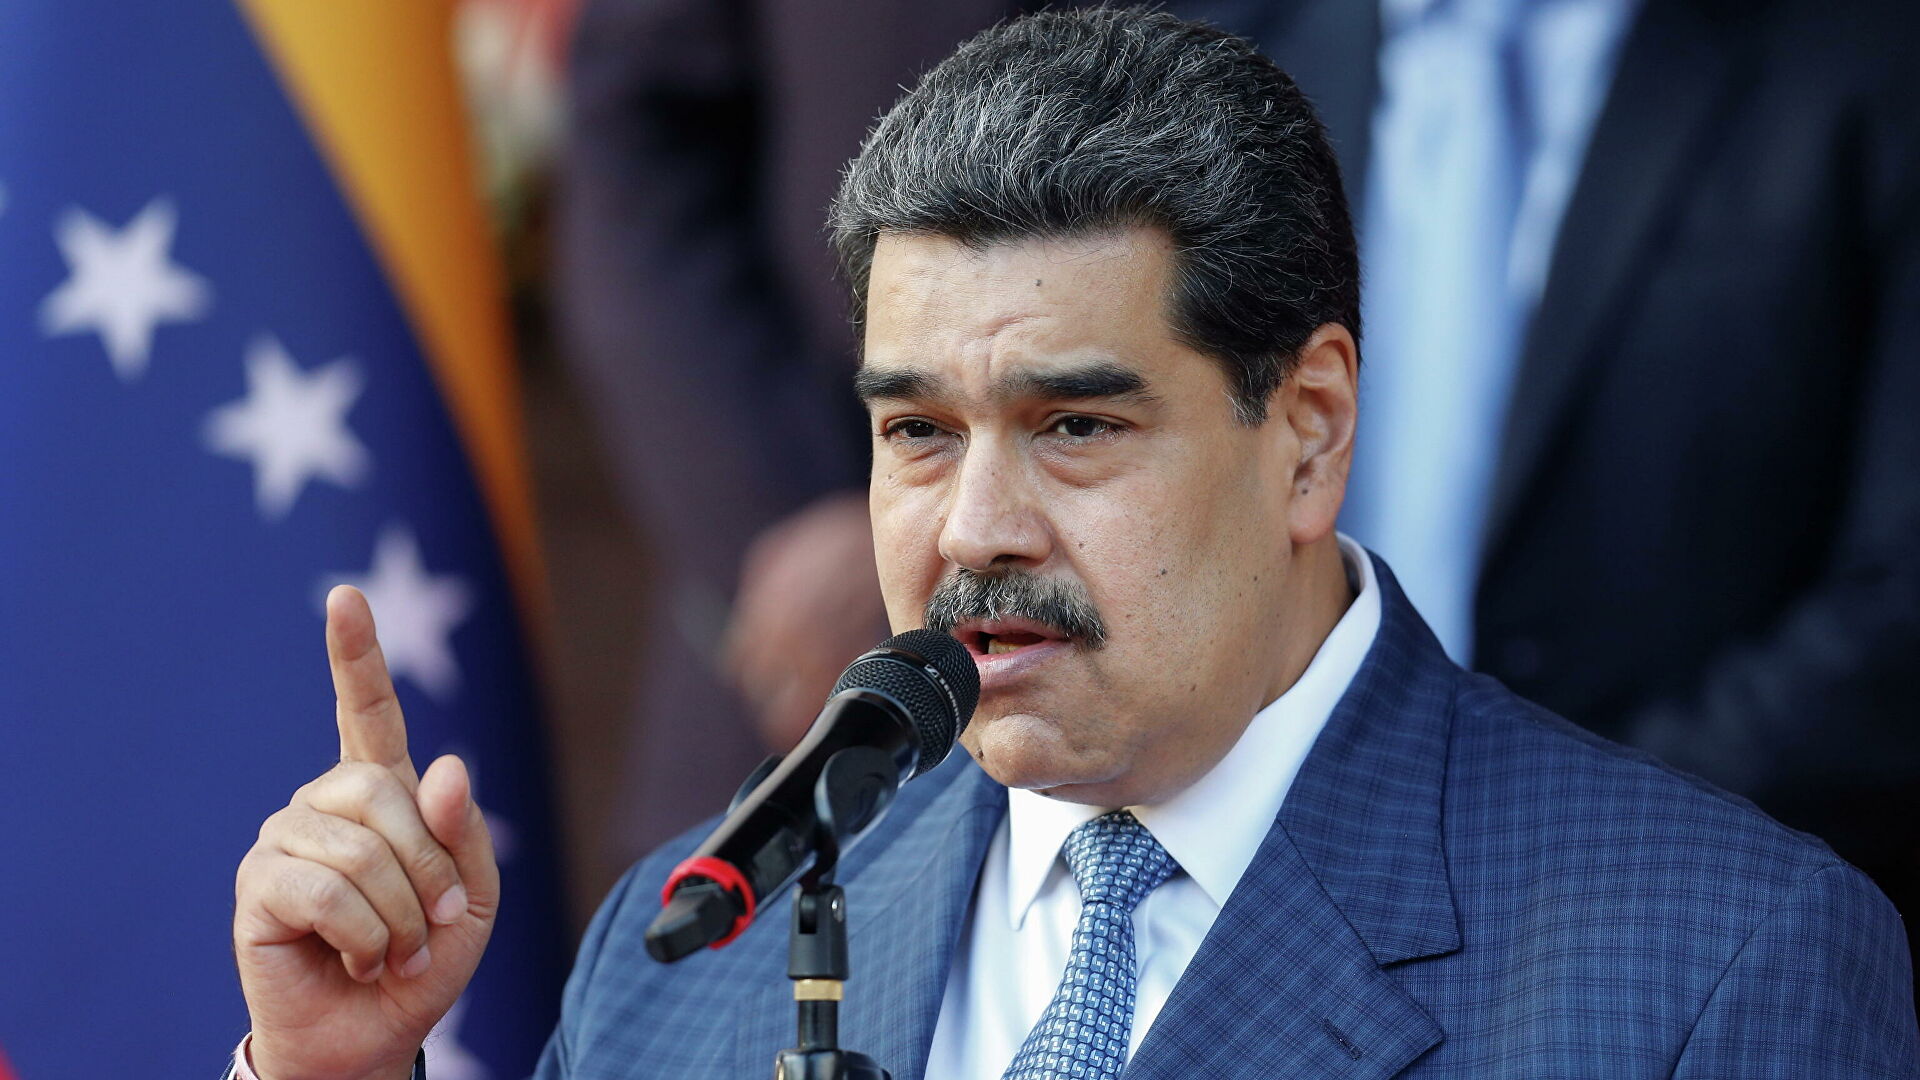 El régimen de Maduro creará un “equipo de vigilancia” para controlar las redes sociales